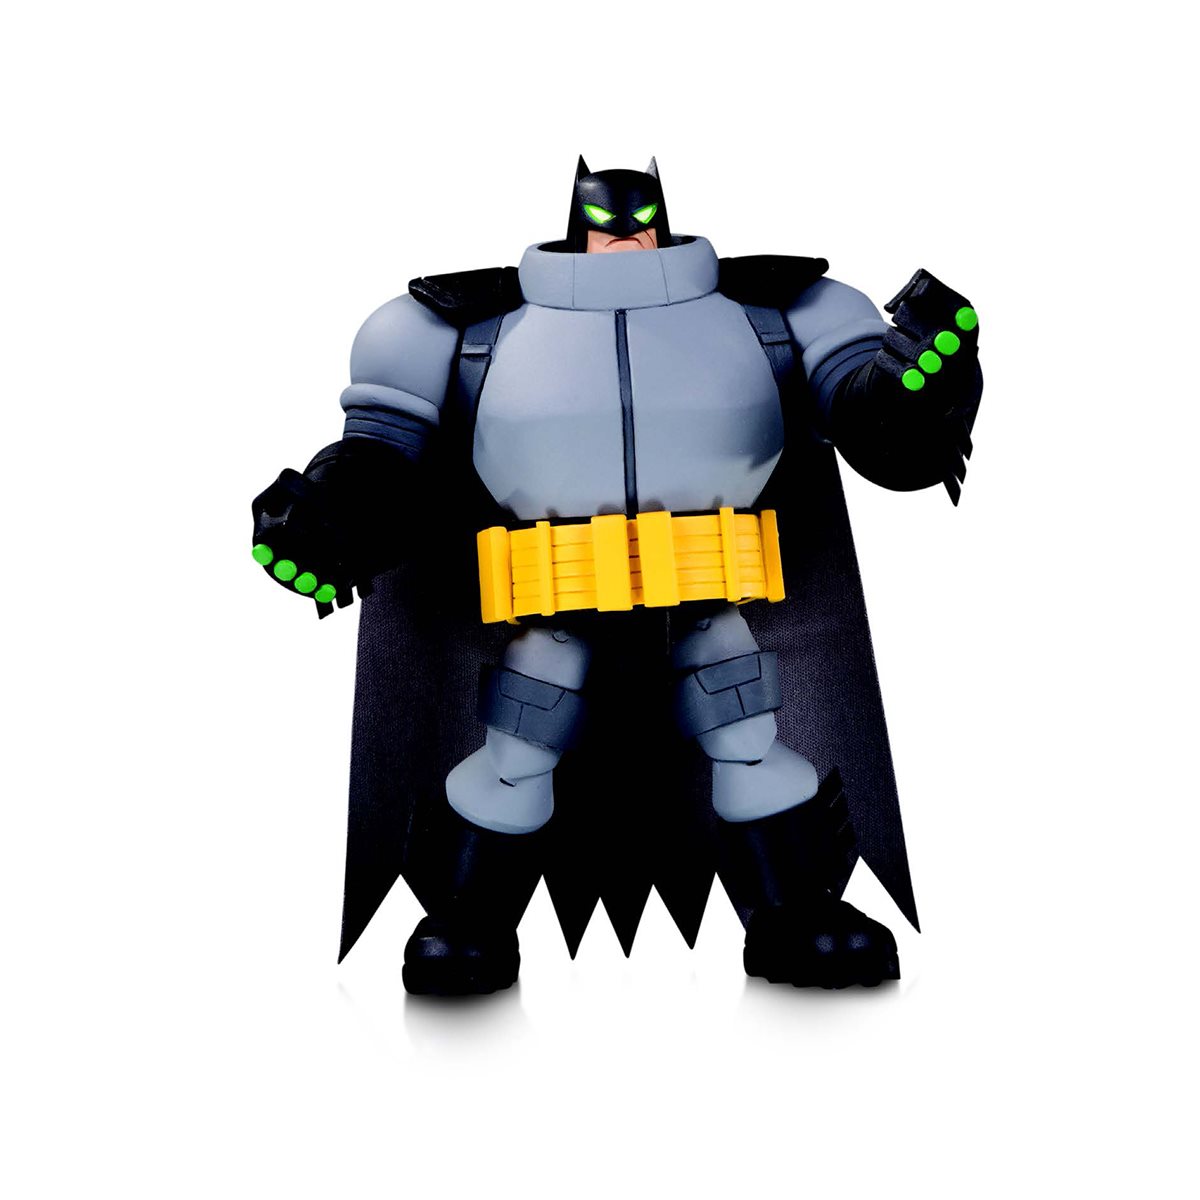 the batman action figure